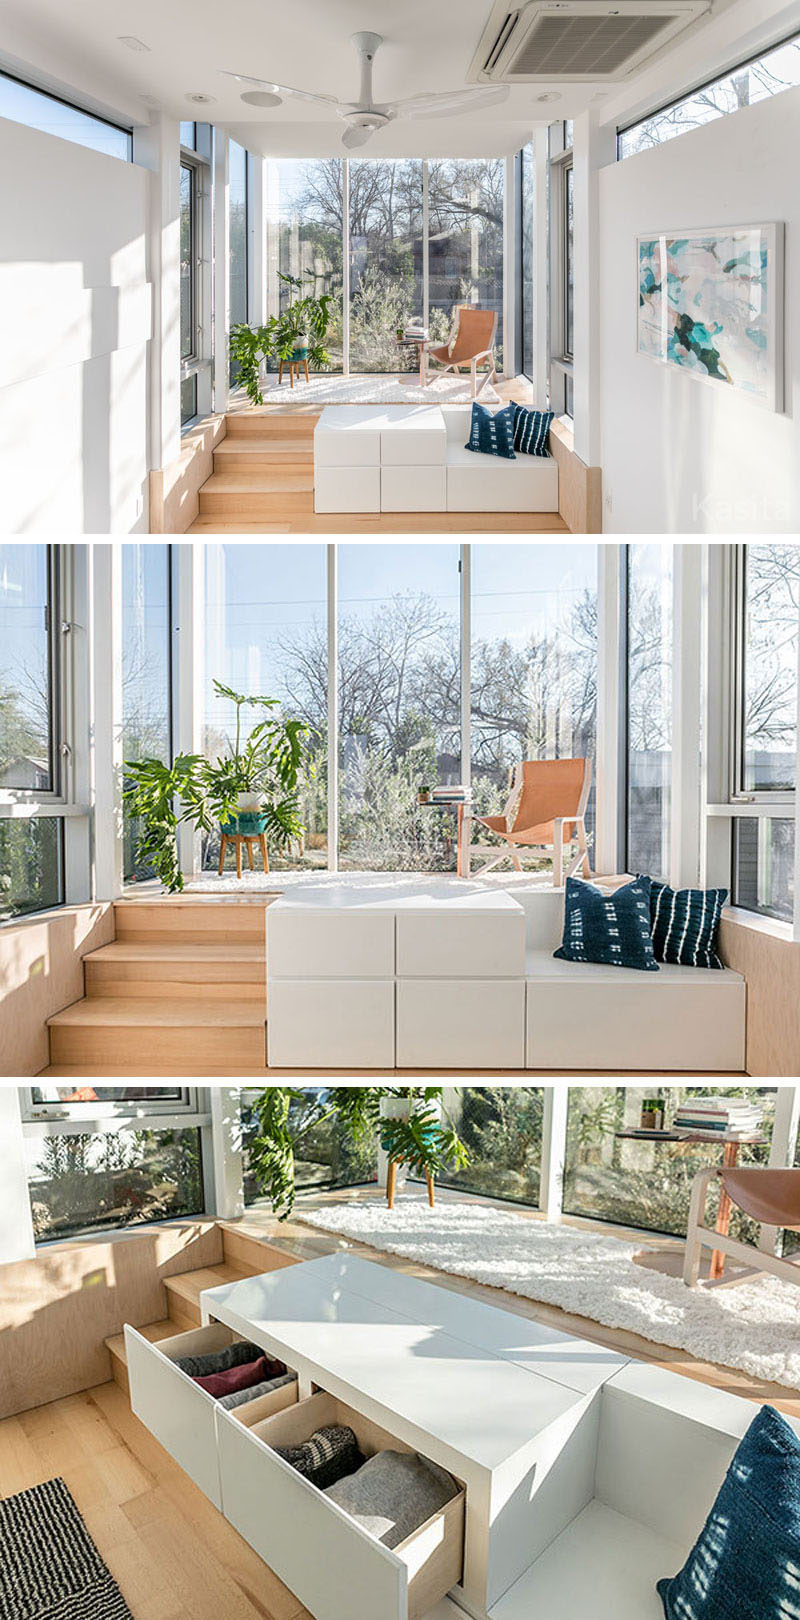 В этом современном крошечном доме есть приподнятая платформа, окруженная окнами от пола до потолка, позволяющими много света заполнять небольшое пространство. Телевизор с плоским экраном спрятан в белом отсеке для хранения с ящиками, рядом с которым также есть небольшая скамейка. #TinyHouse #TinyHome # Архитектура #SmallLiving # ModernTinyHouse #SmallHouse